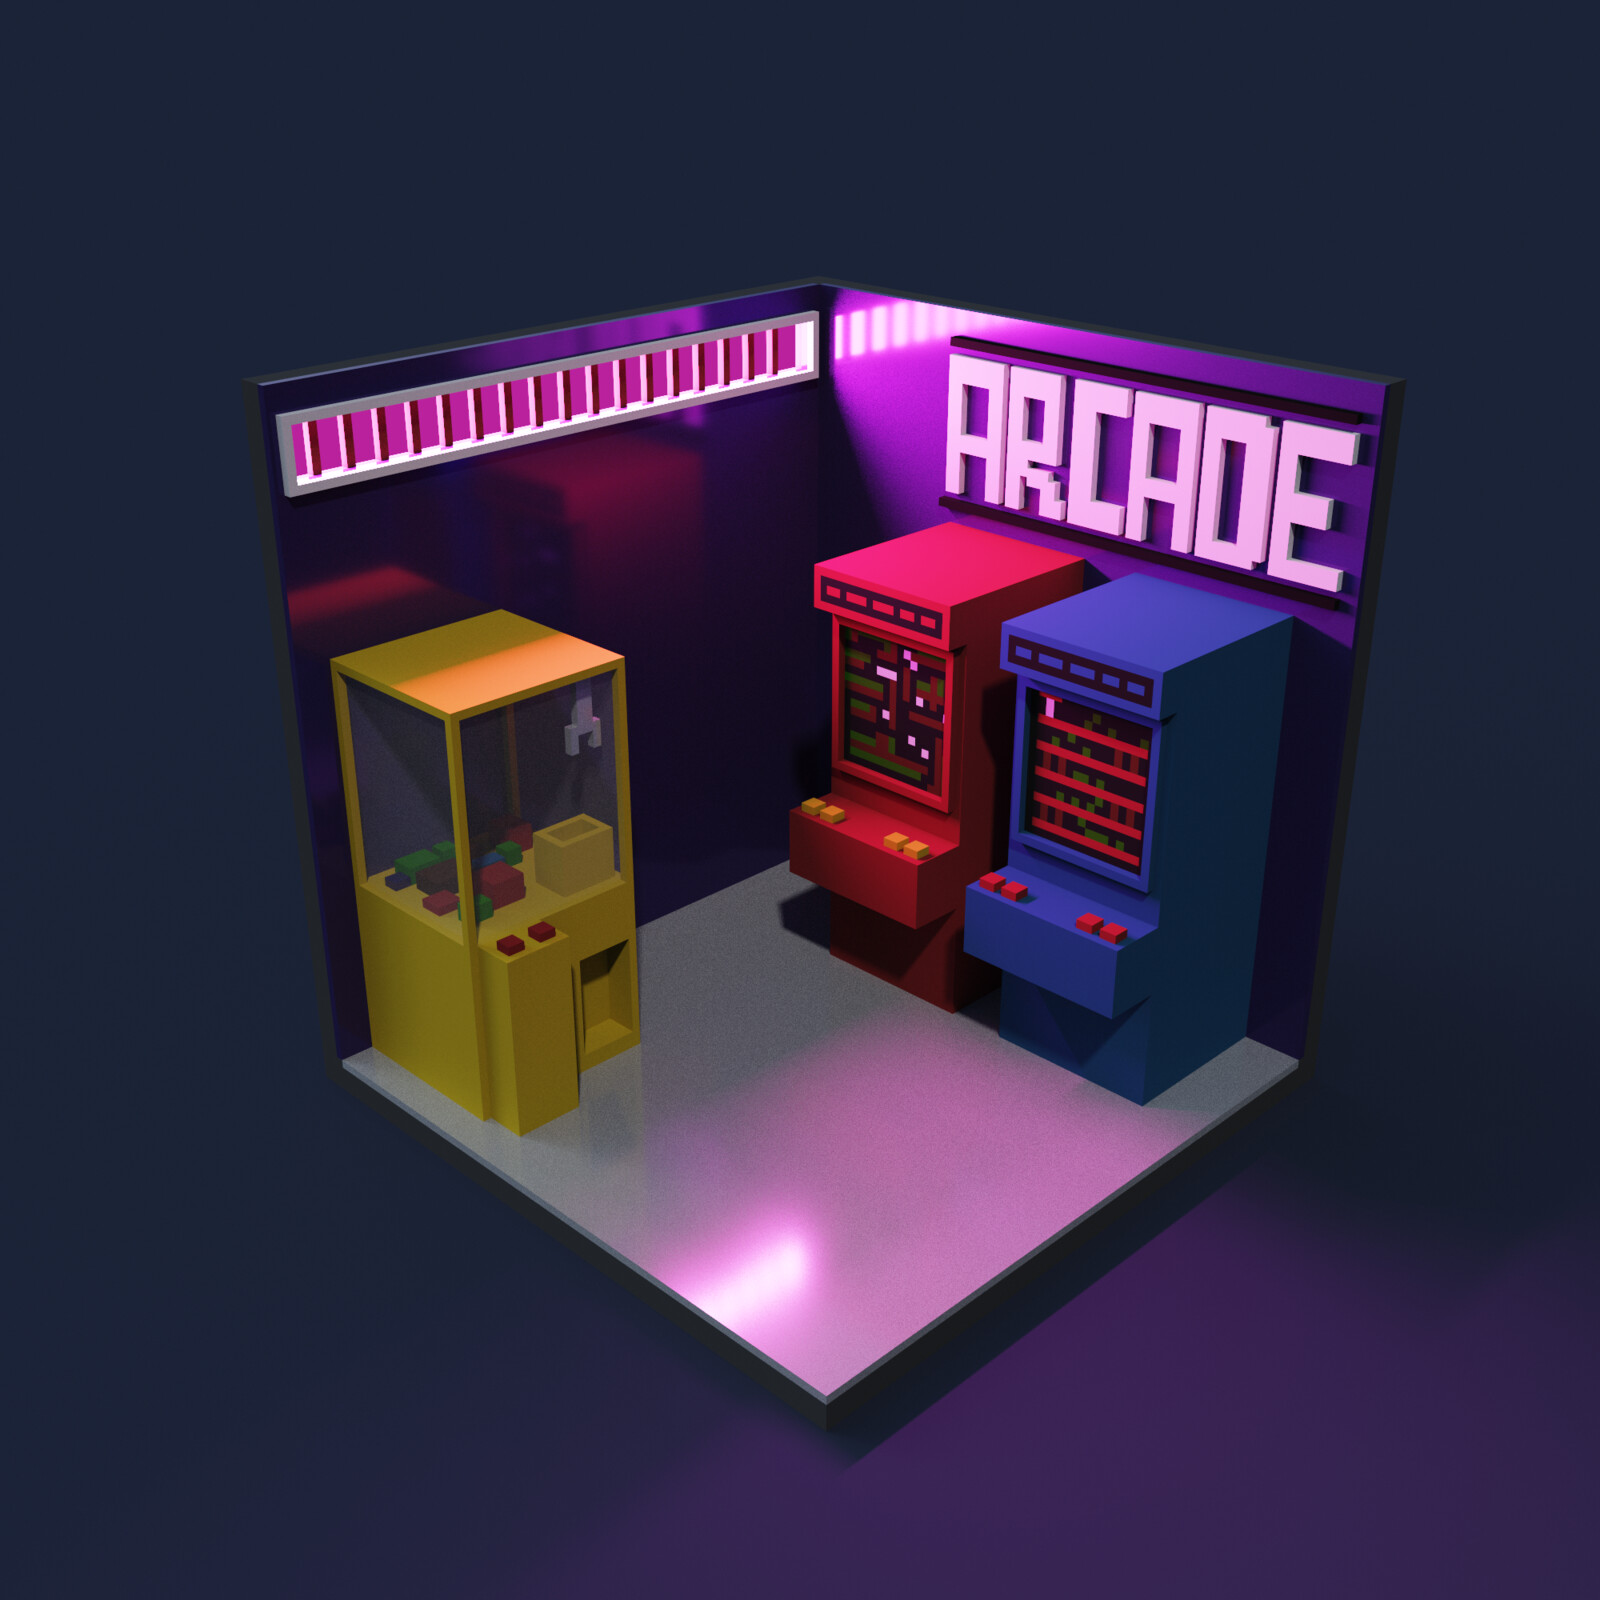 90s vibe retro arcade.
https://hic.af/o/567355